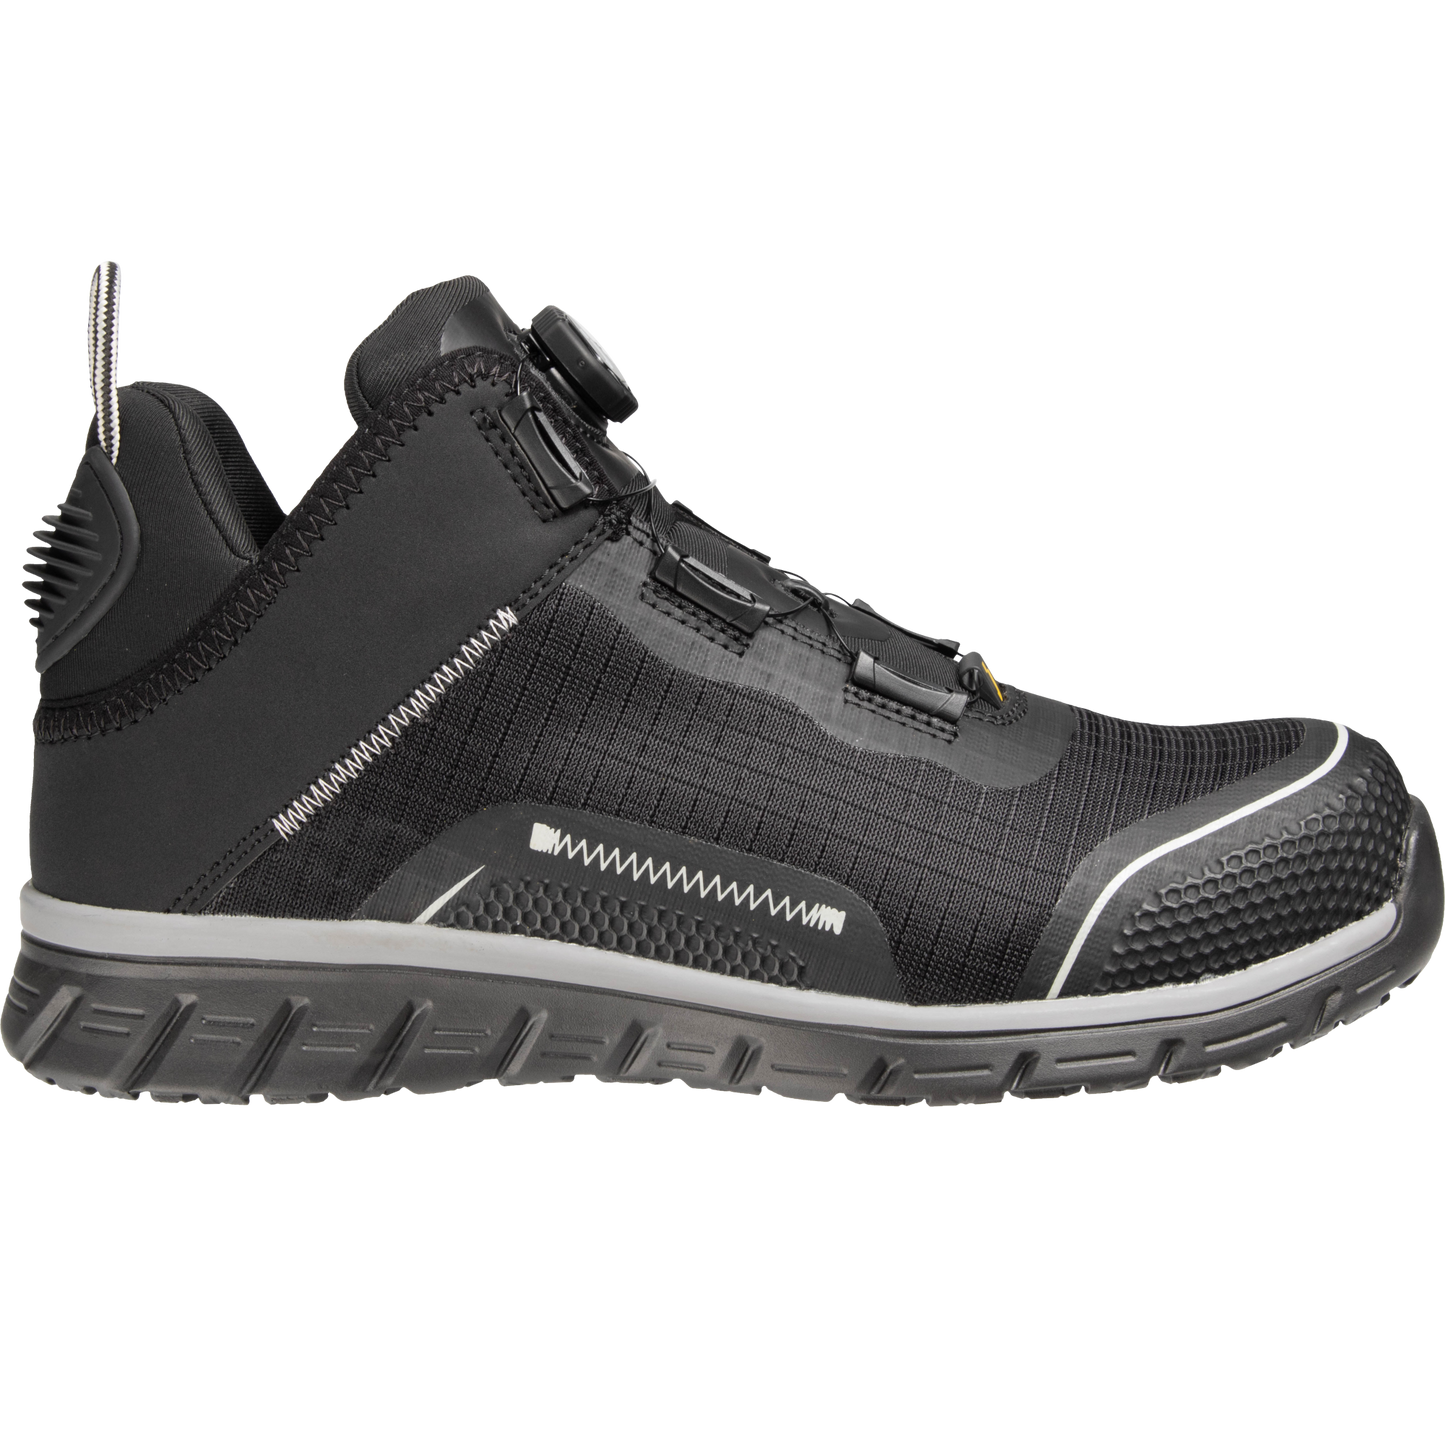 Pristatome LIGERO2 S1P - vienus lengviausių apsauginių darbo batų rinkoje, idealius lengvoms užduotims. Šie naujoviški aukšto aulo sportiniai batai su TLS užsegimo sistema sujungia naujausias apsaugos technologijas ir stilingą sportinį dizainą. Štai kodėl LIGERO2 S1P yra puikus pasirinkimas jūsų saugumo avalynei: